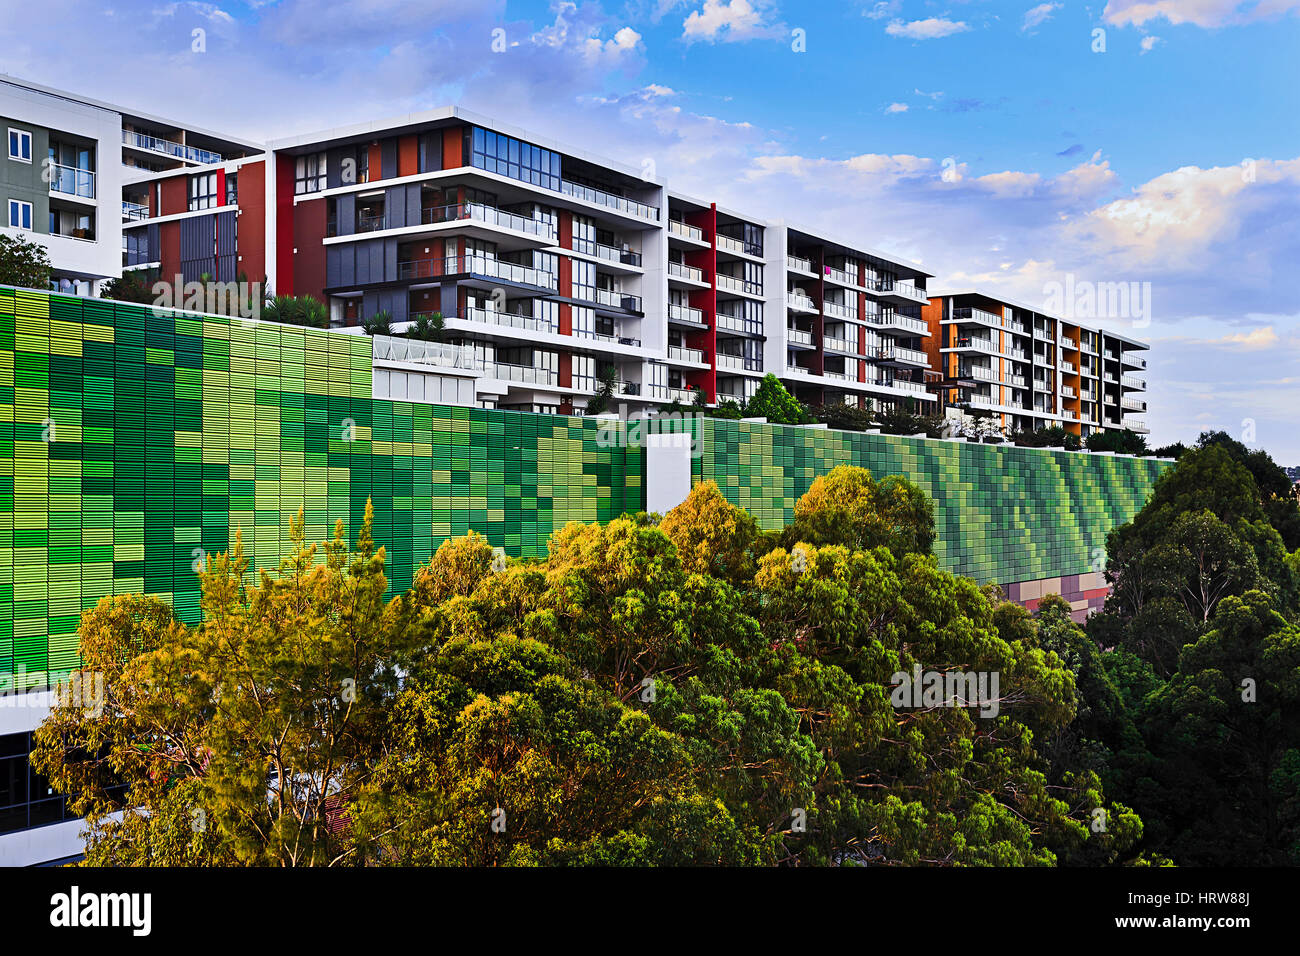 Sviluppo massiccio di nuovo multi-storia appartamenti immobili in Sydney occidentale interna intorno top ryde sobborgo. Moderni appartamenti residenziali sotto il cielo blu. Foto Stock